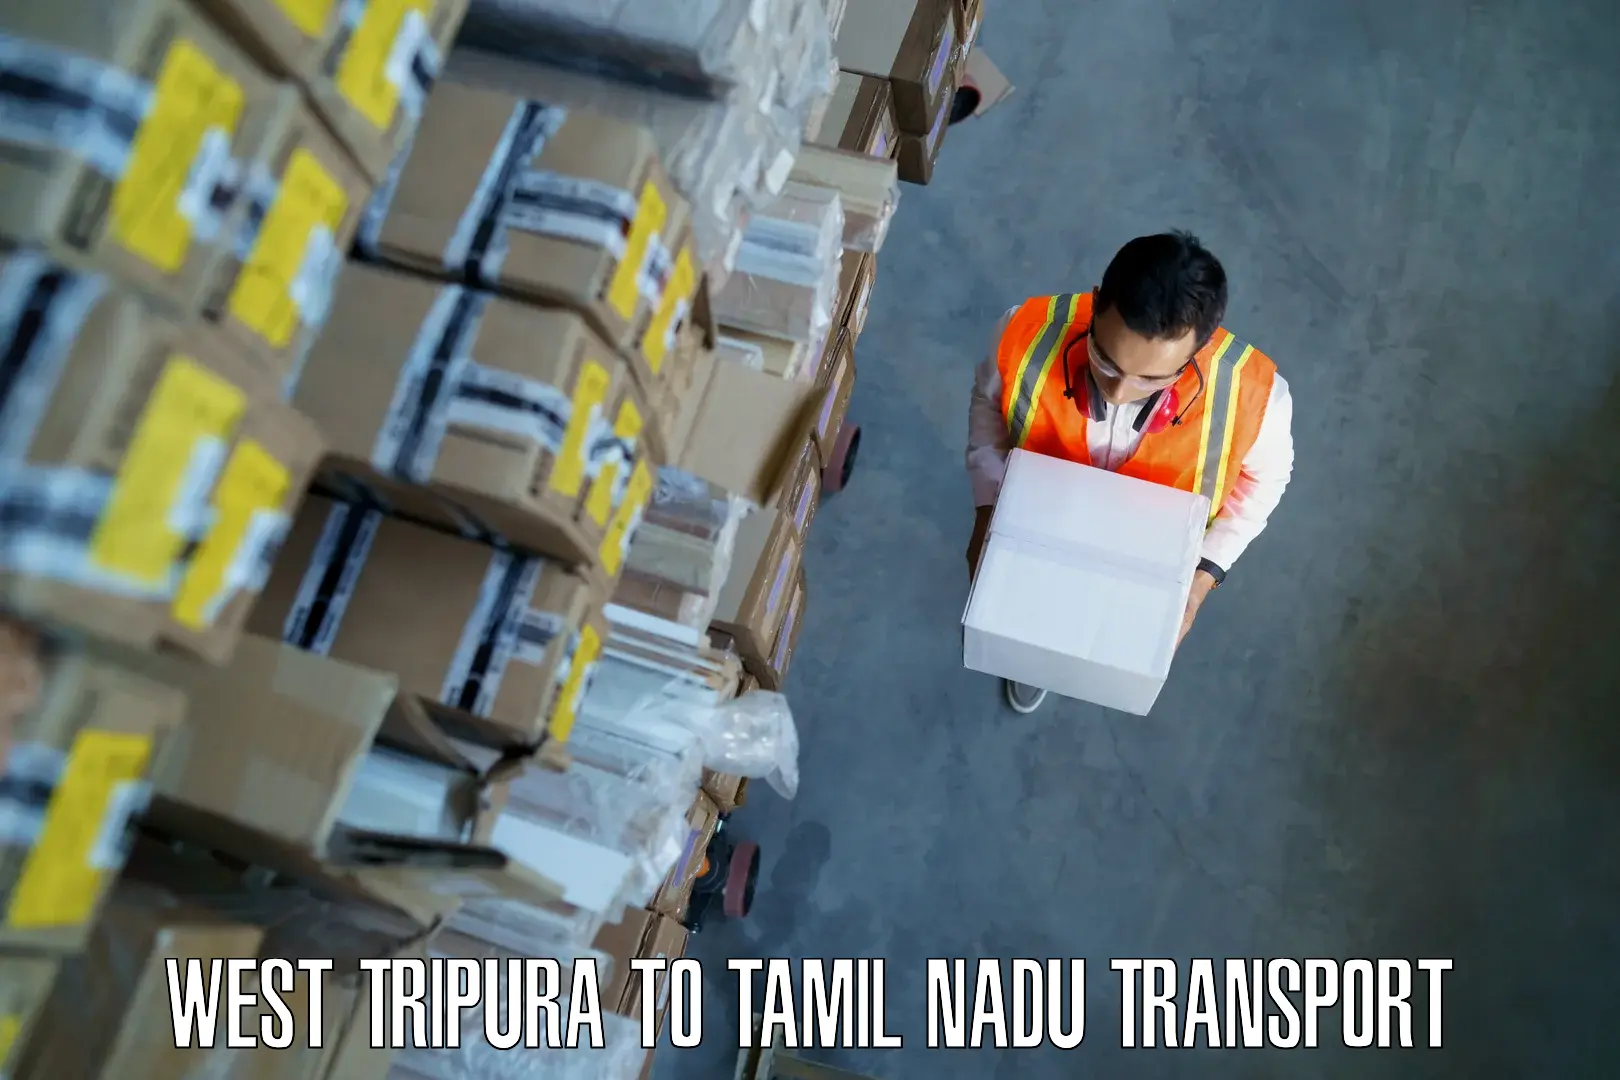 Parcel transport services West Tripura to IIIT Tiruchirappalli